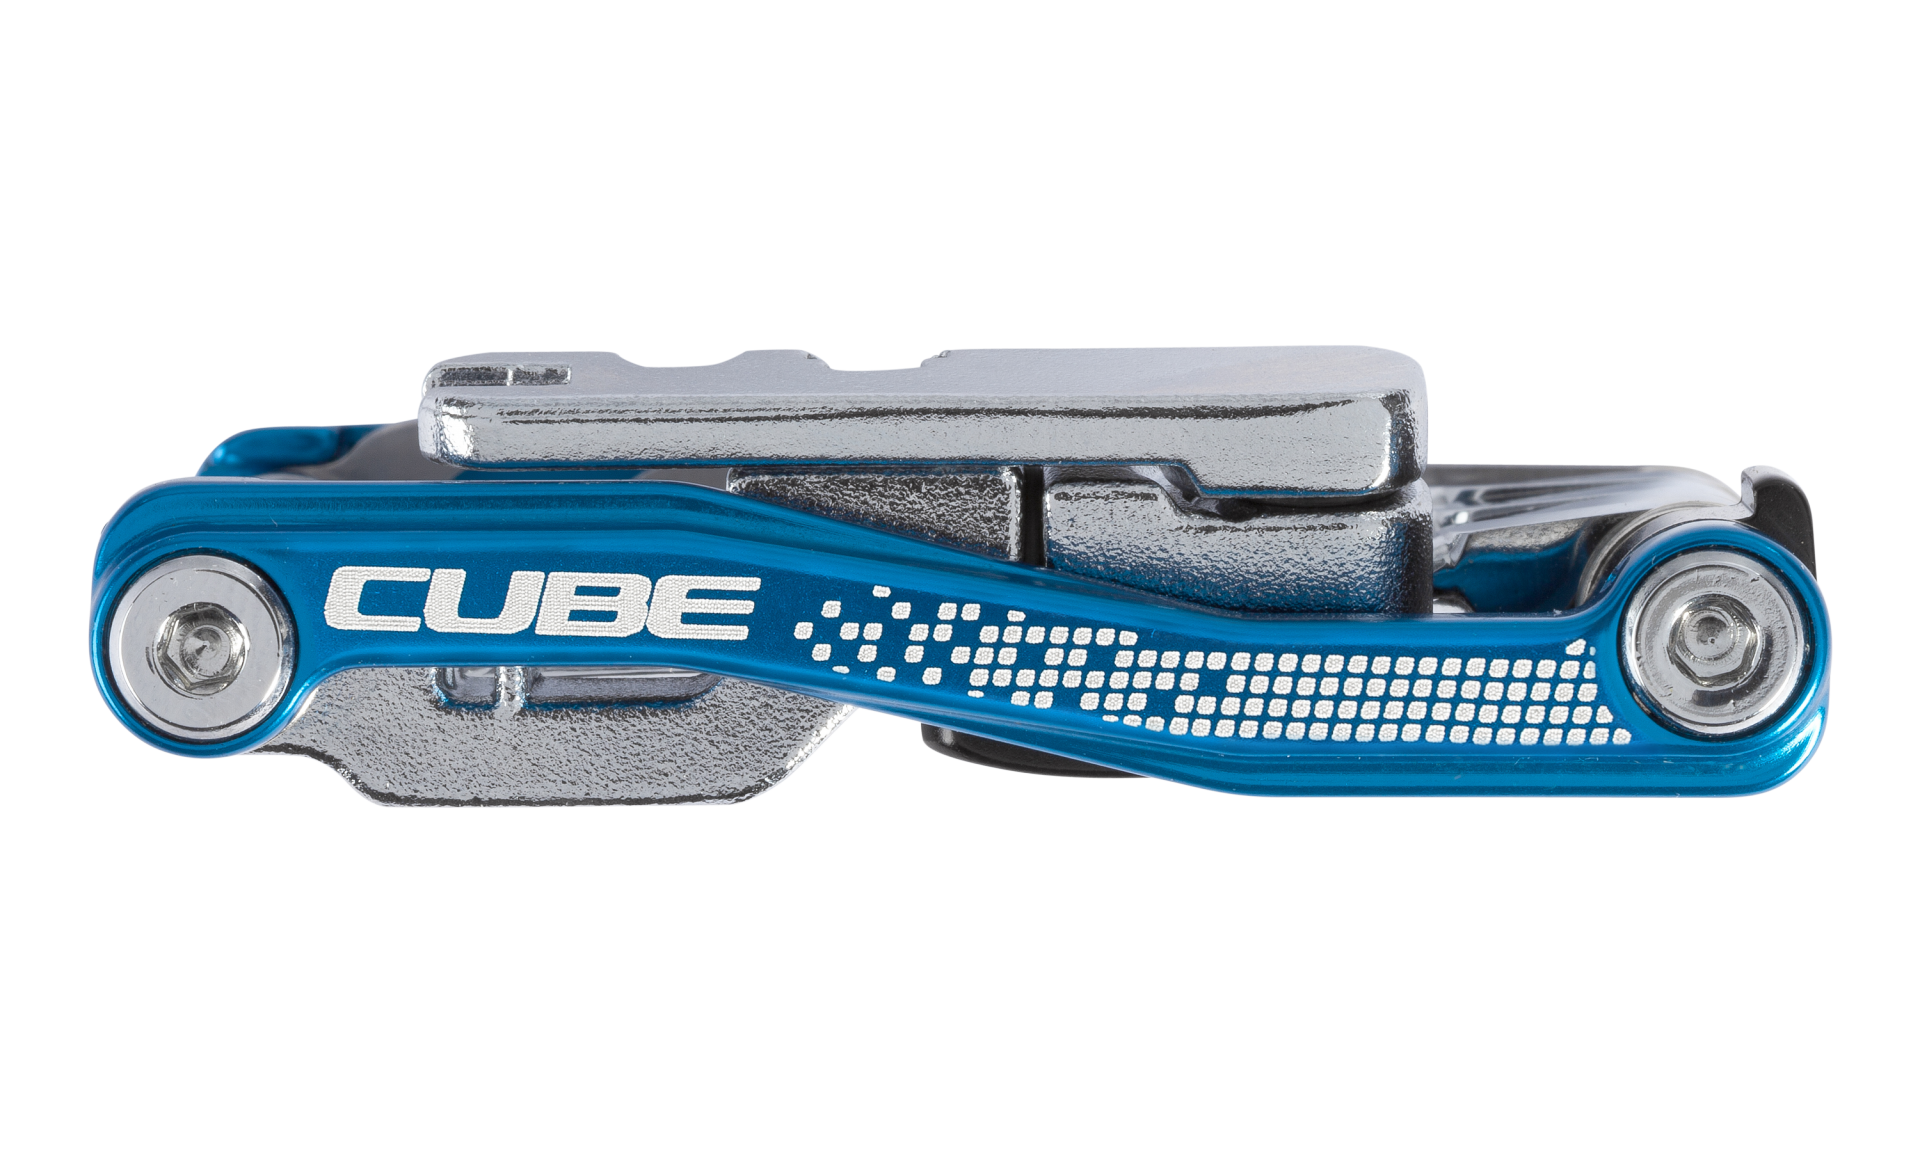 Cube Cubetool 20 in 1 Blauw/Chroom